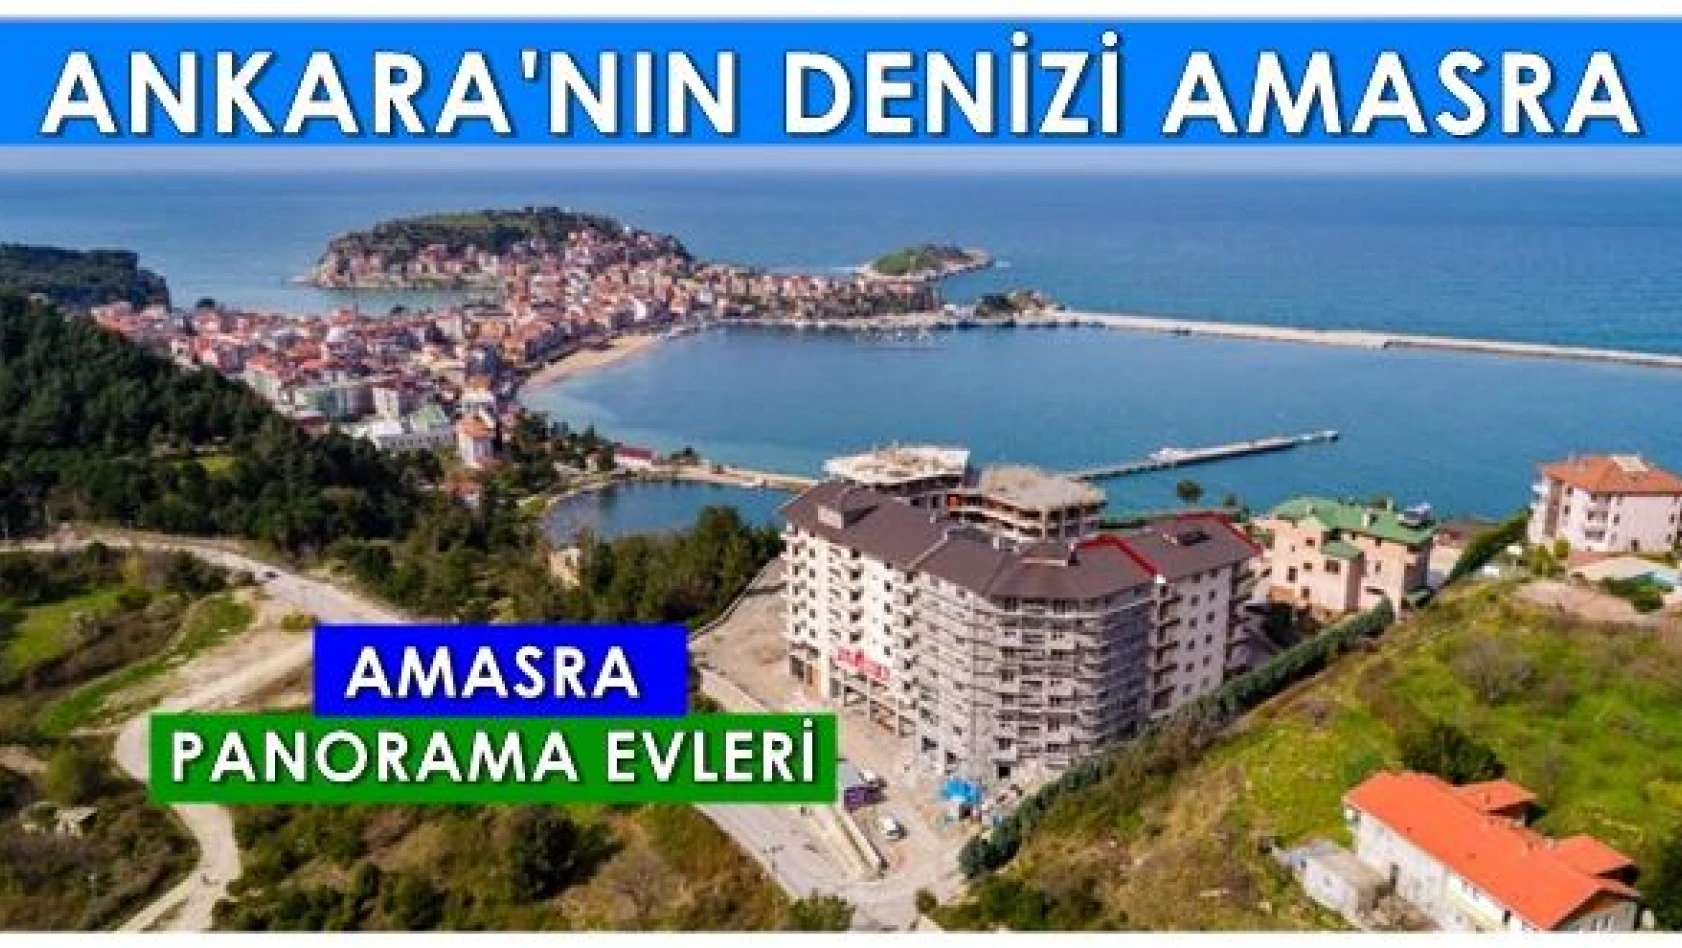 Ankara'nın denizi Amasra'da Panorama evleri